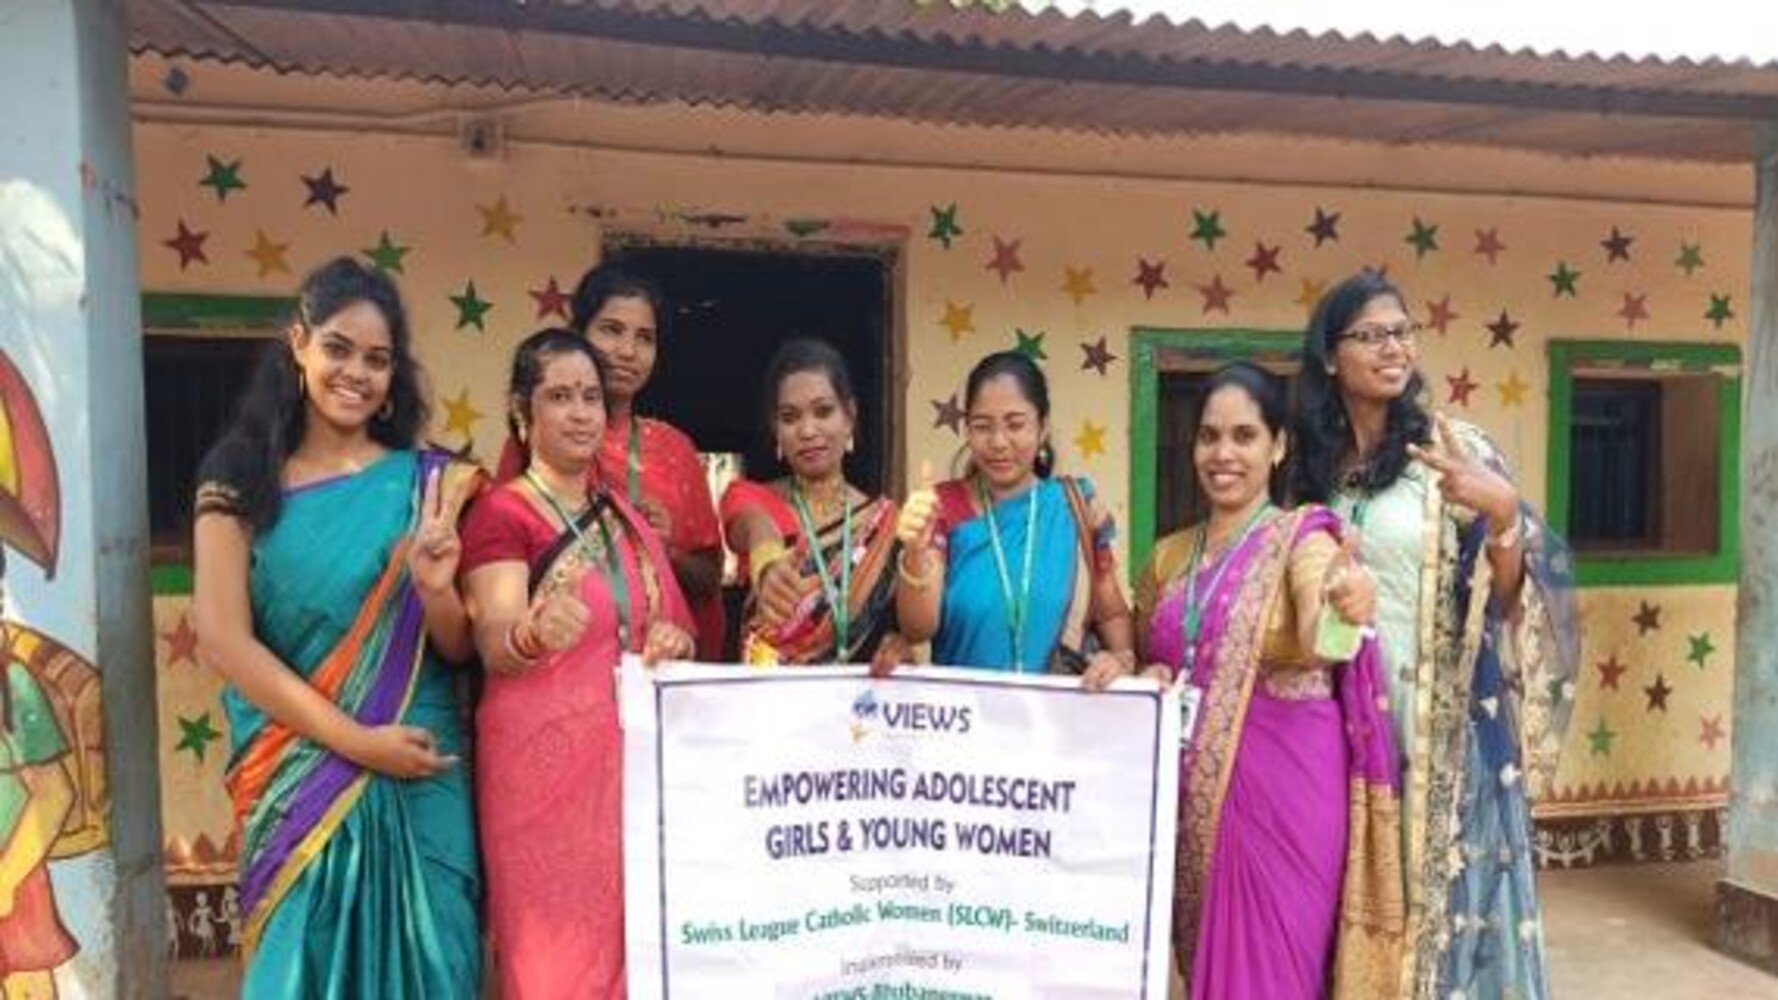 Empowerment von weiblichen Jugendlichen und jungen Frauen in einem Slum in Bhubaneswar, Indien. Foto: VIEWS